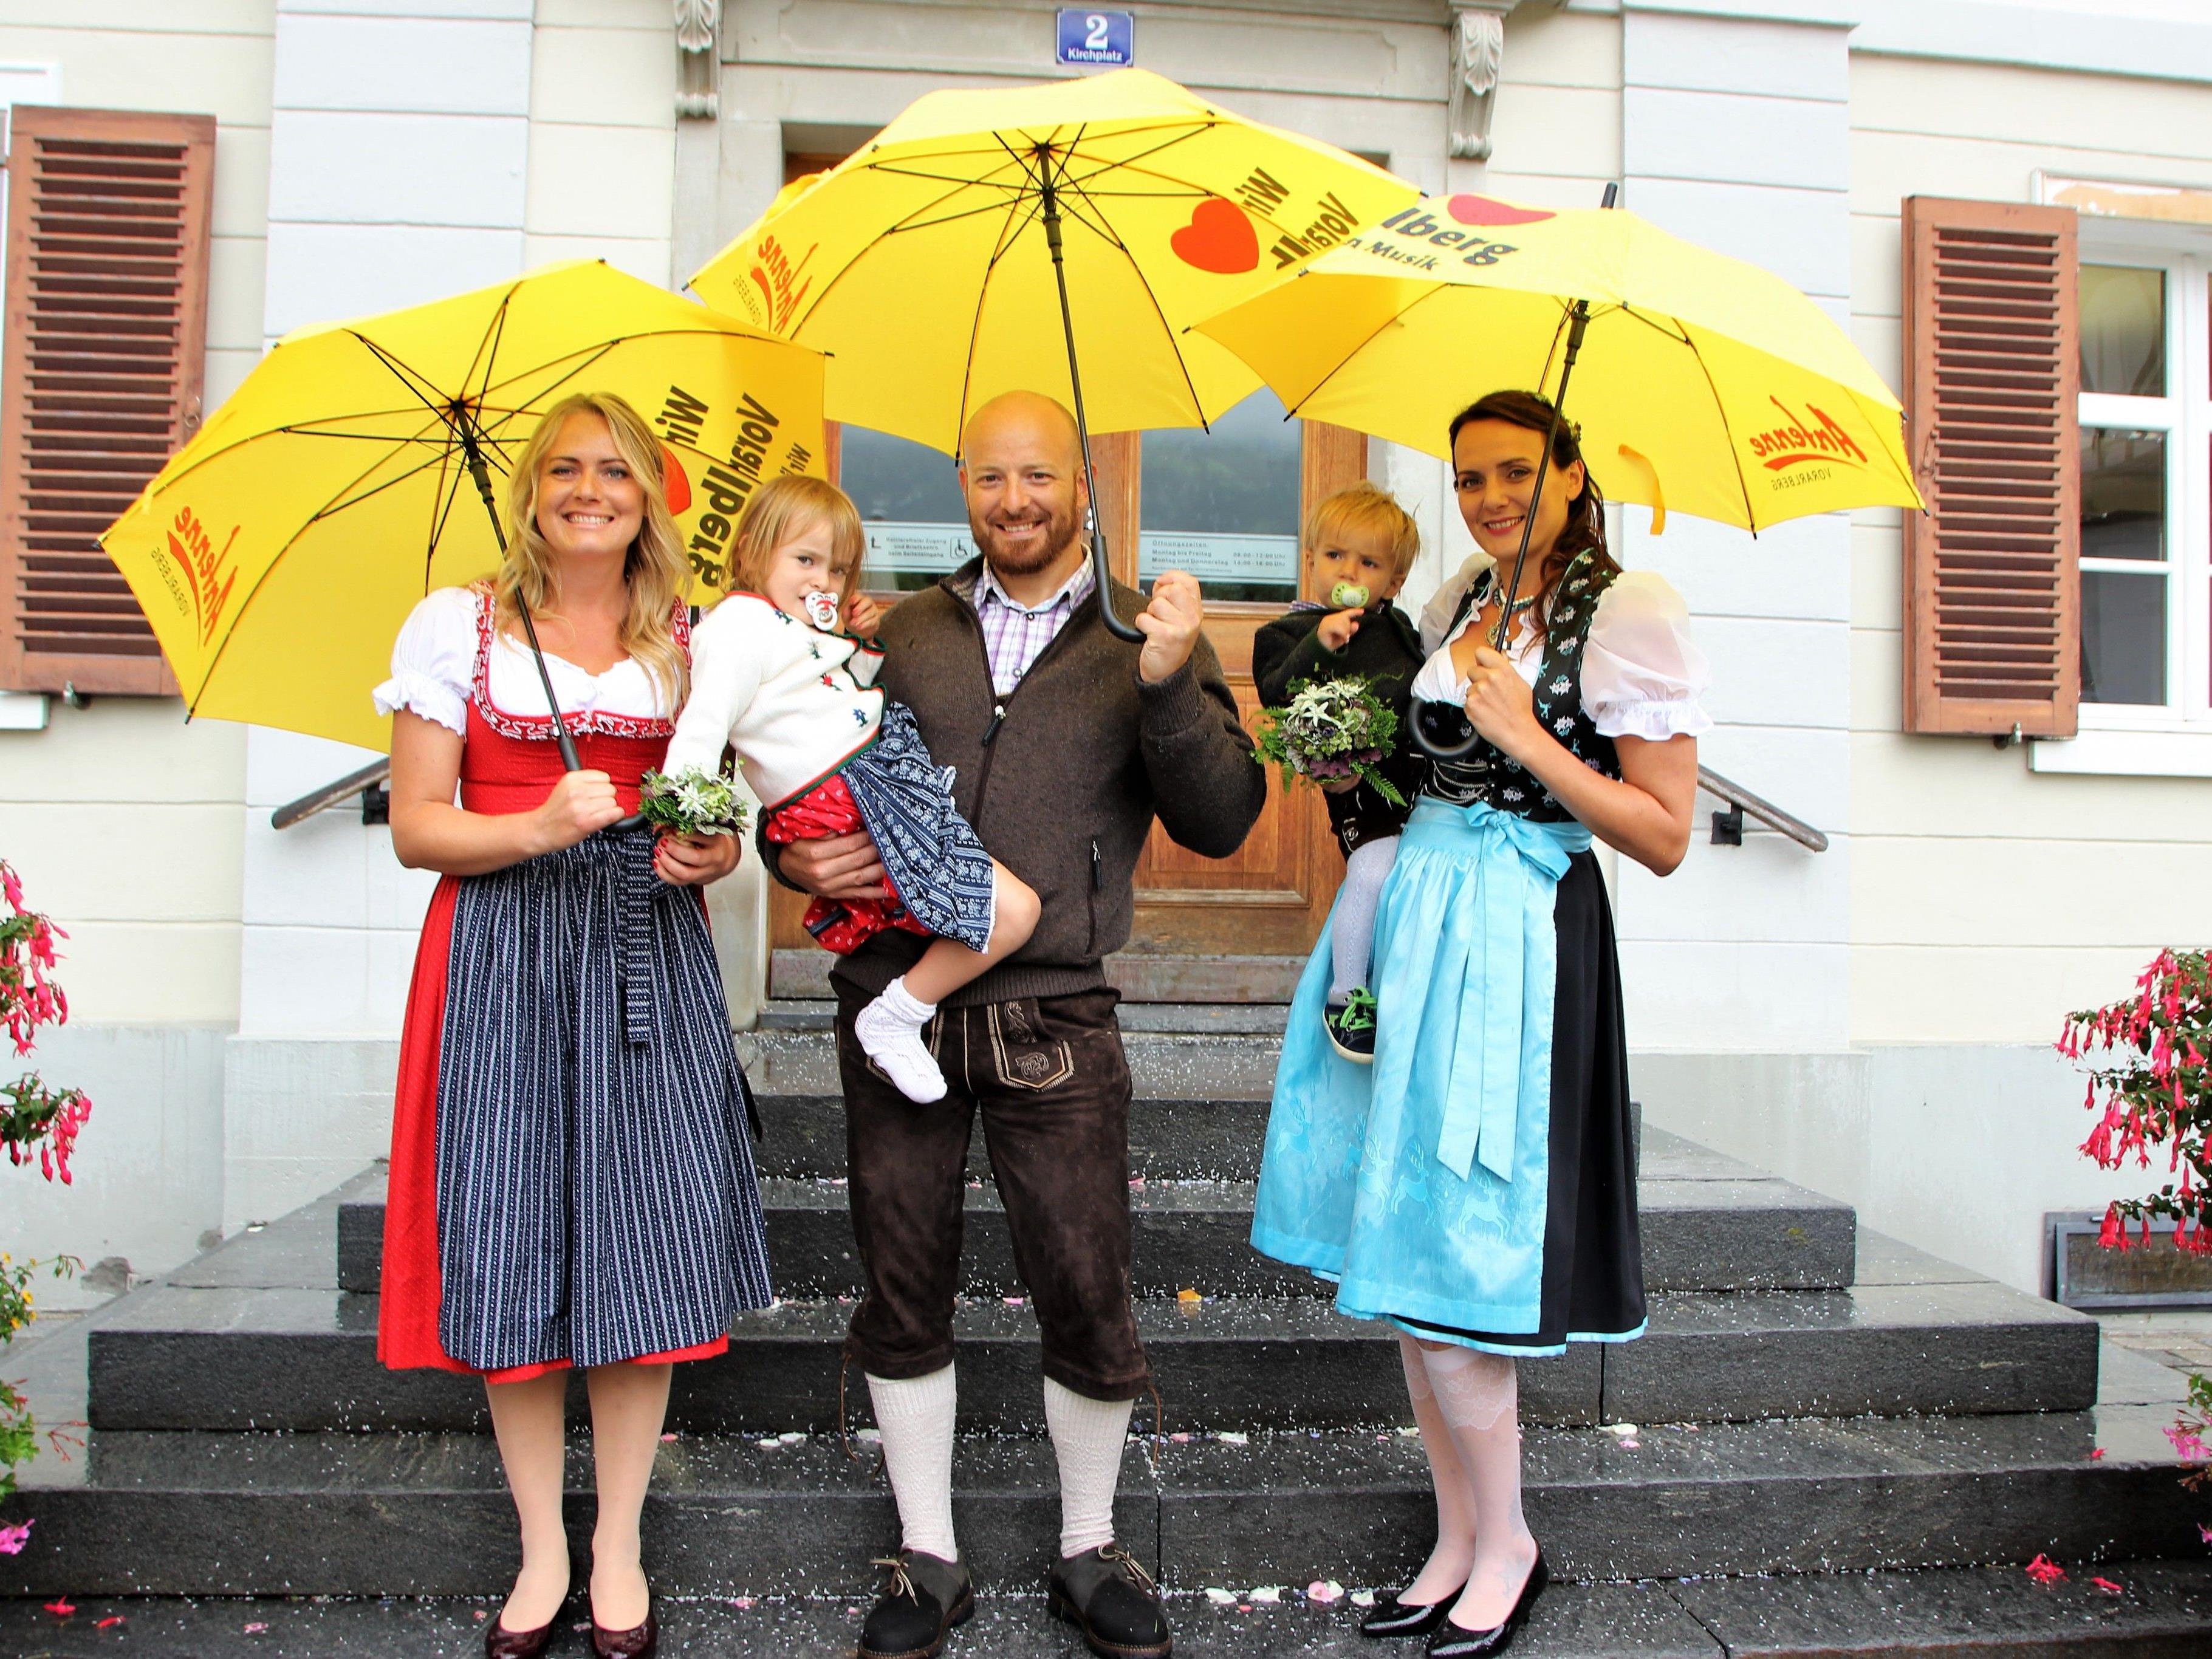 Das Antenne-Team Vorarlberg überraschte das Brautpaar mit sonnengelben Regenschirmen.